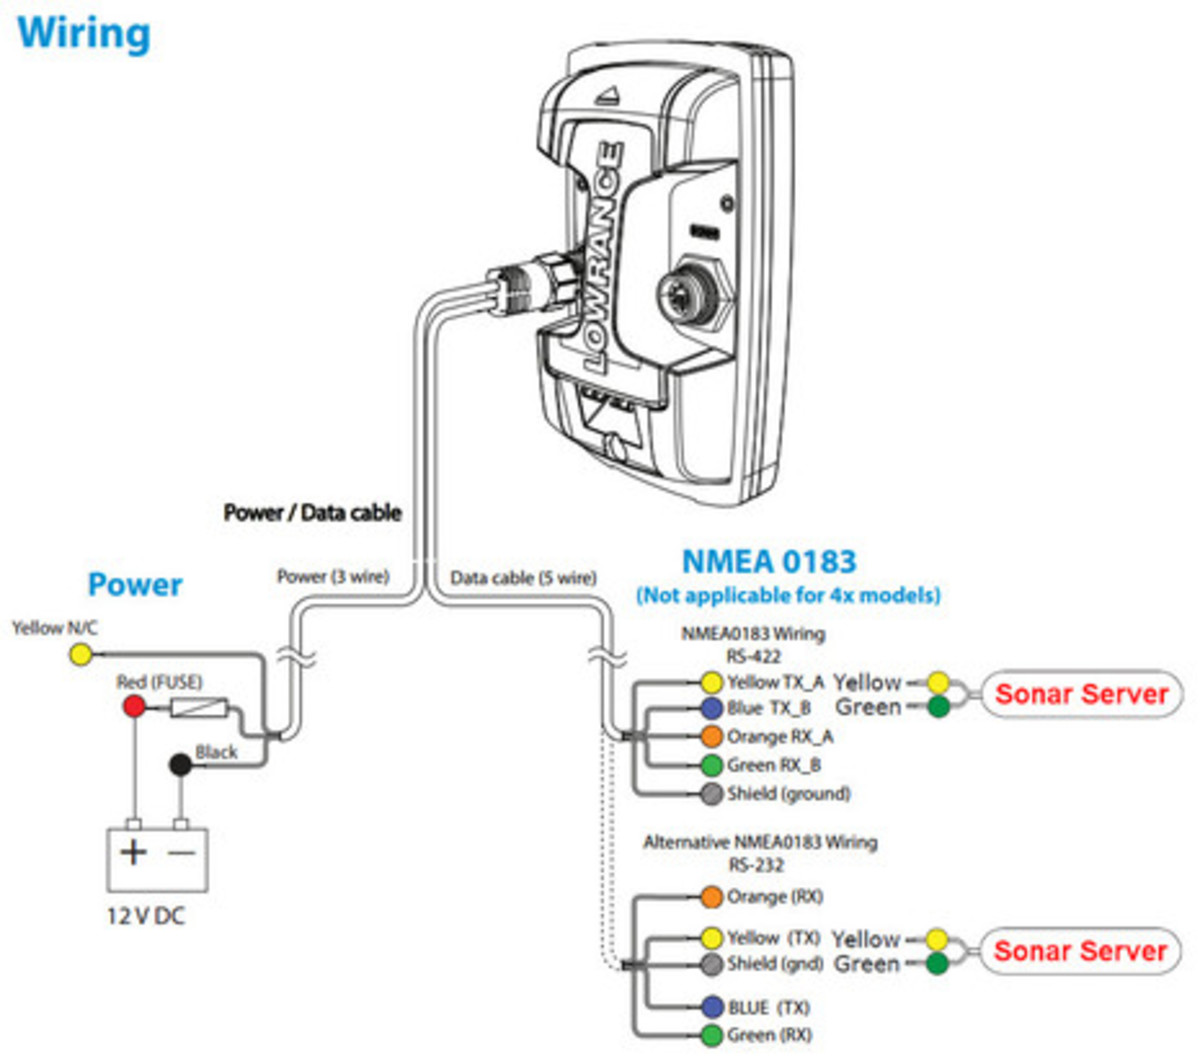 Digital_Yacht_Sonar_Server_Lowrance_Elite4_wiring_diagram_aPanbo.jpg